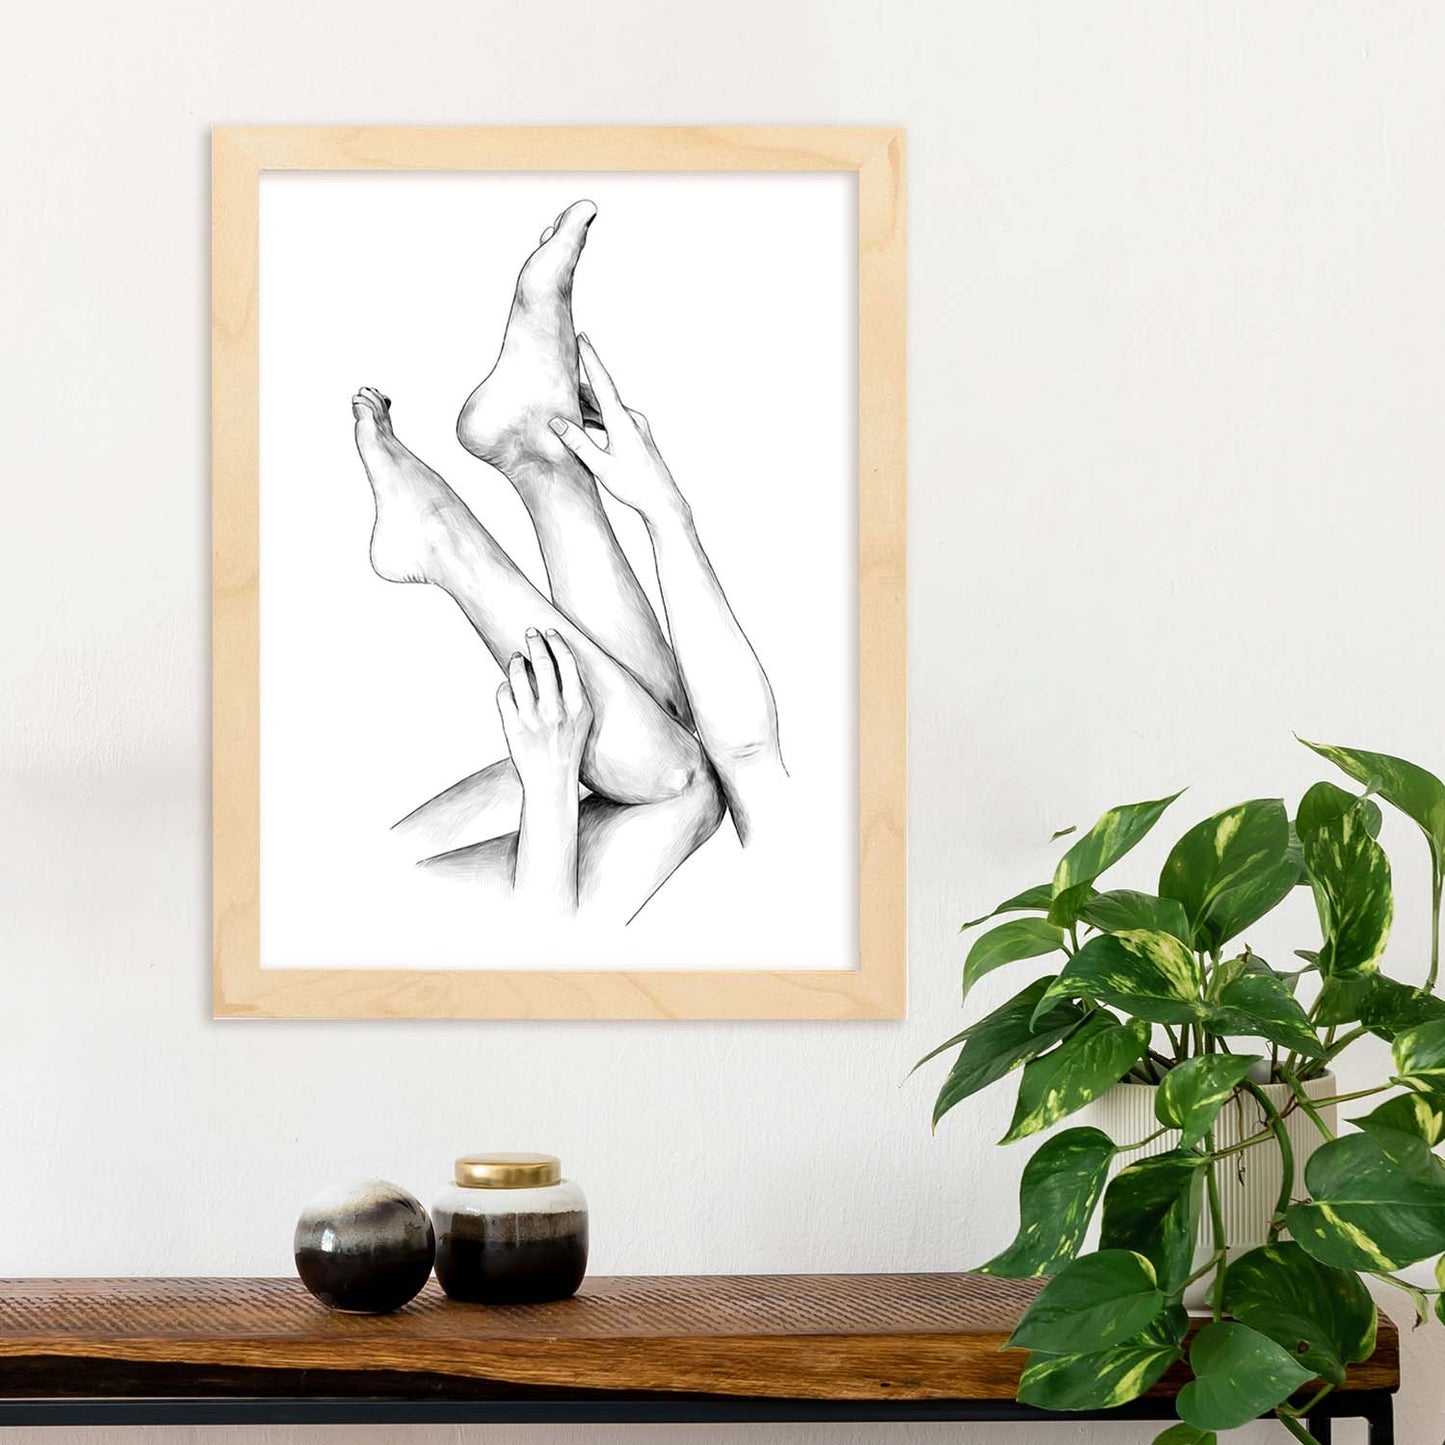 Posters eróticos. Lámina Piernas 2 dibujada con imágenes sensuales del cuerpo femenino.-Artwork-Nacnic-Nacnic Estudio SL